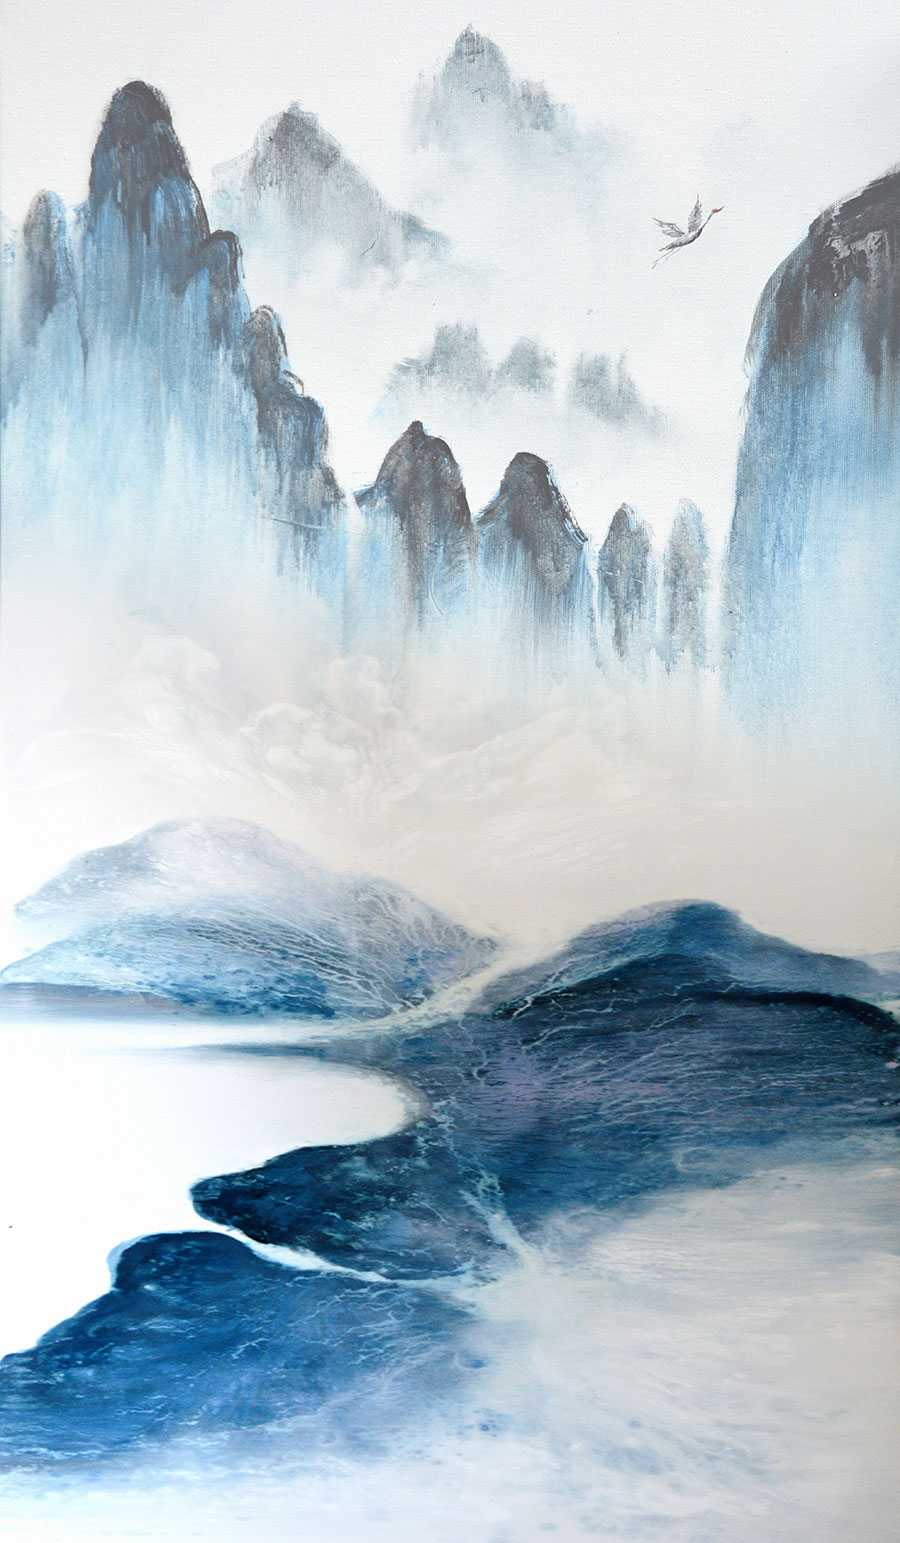 现代中国风素材: 山水意境装饰画 A